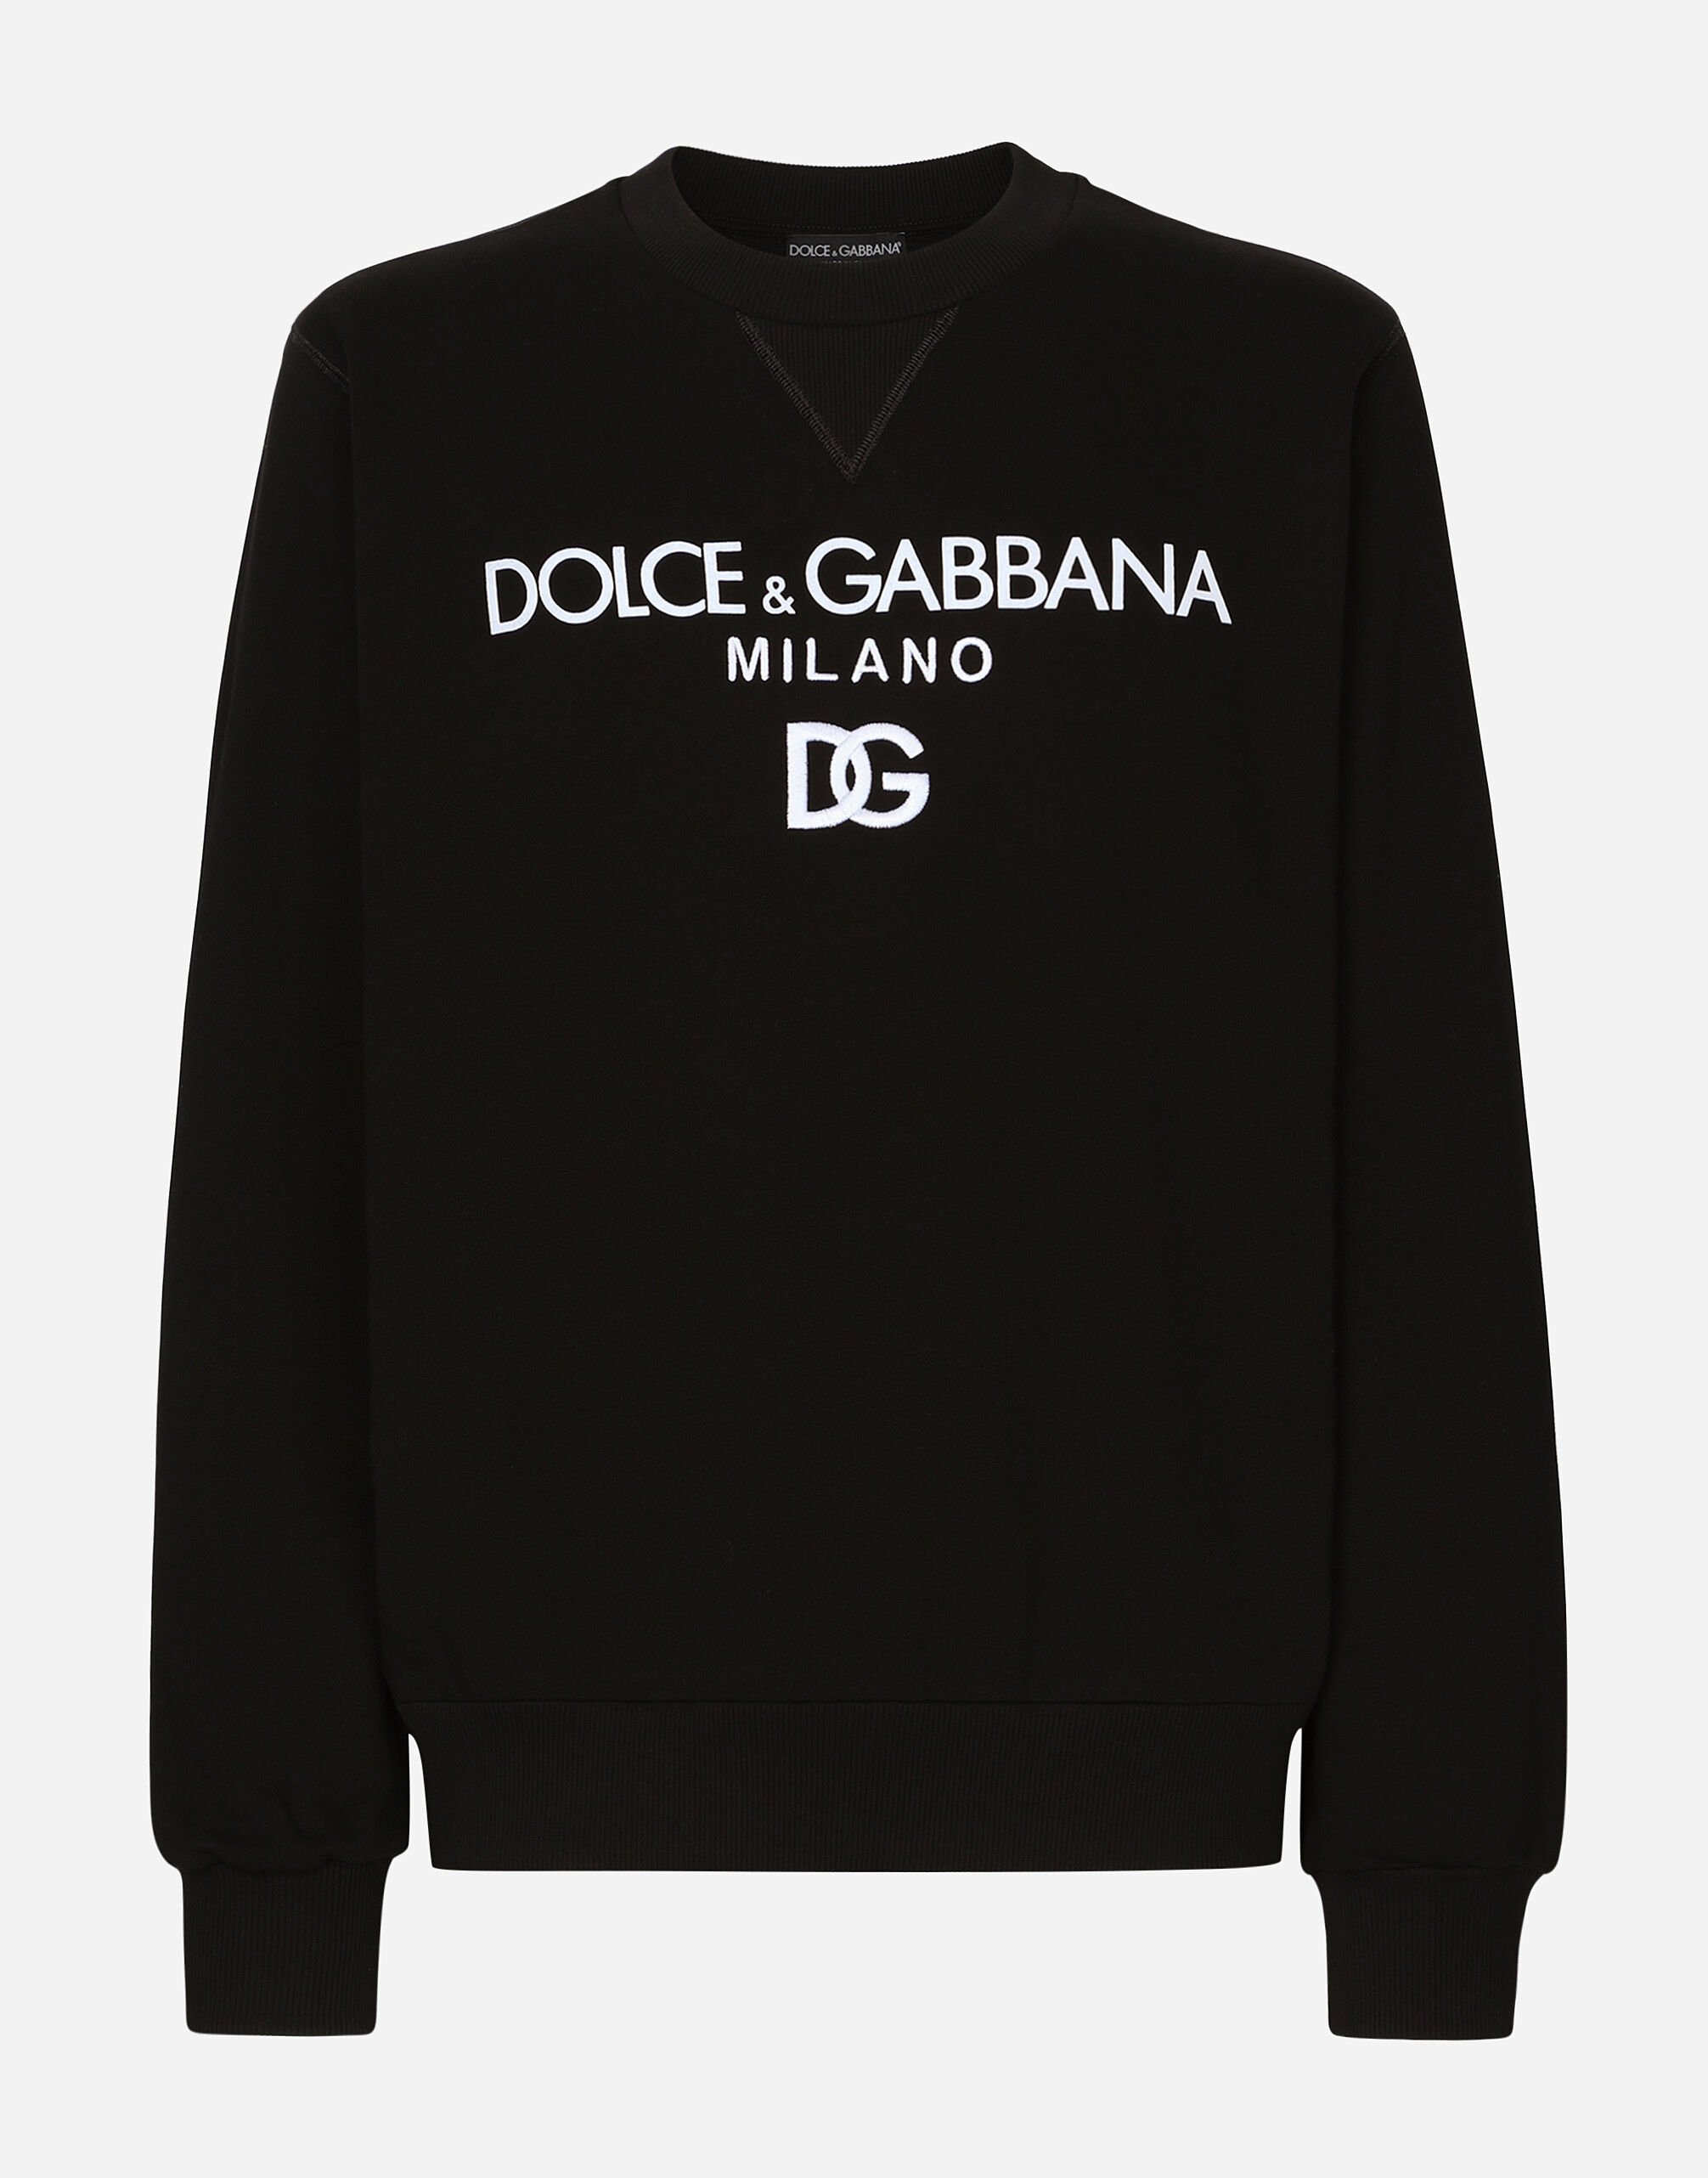 Dolce & Gabbana DG 자수 저지 스웨트셔츠 블랙 G5JG4TFU5U8